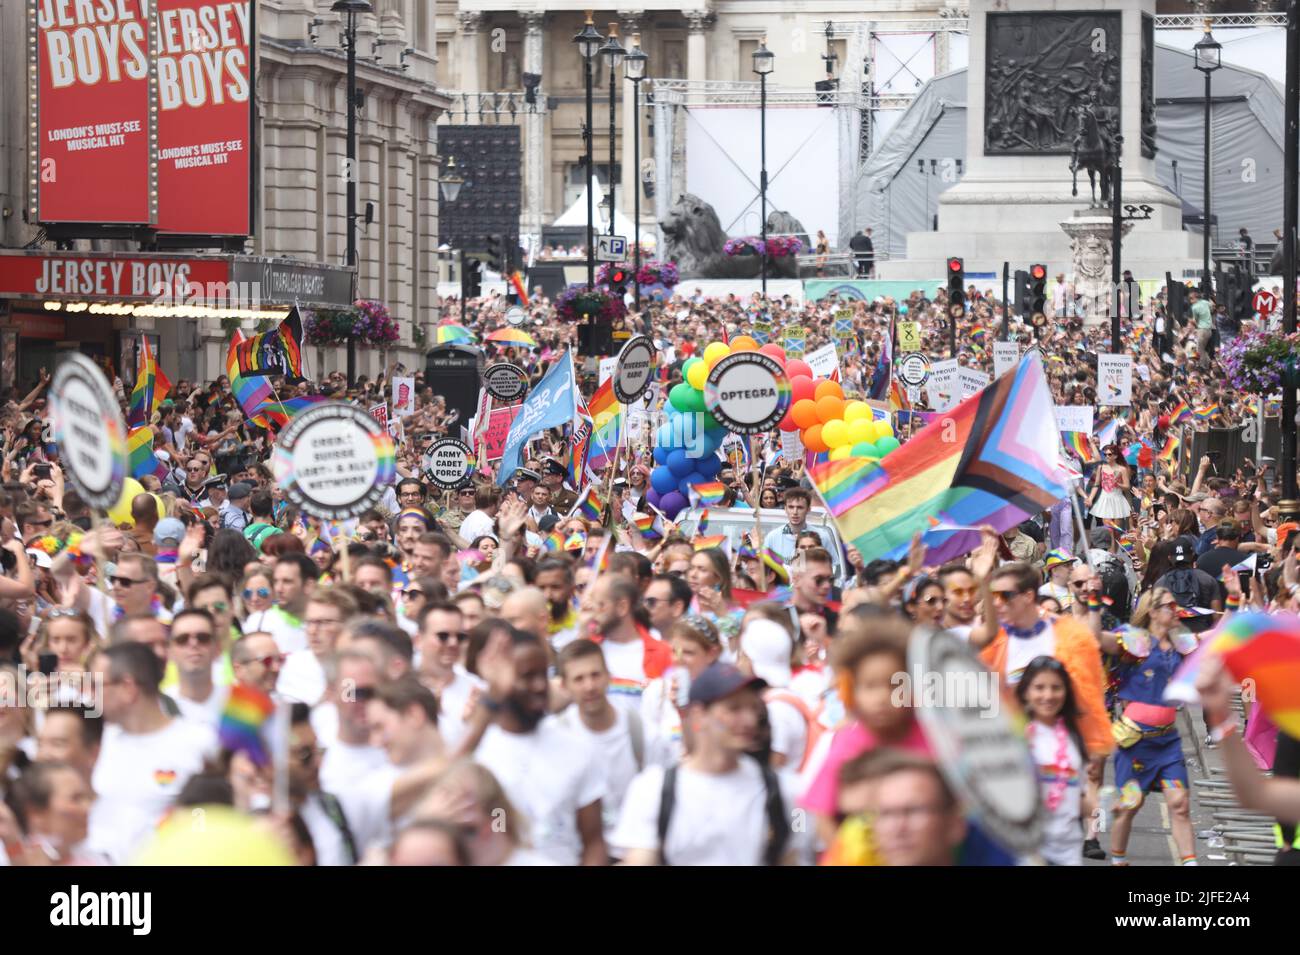 La gente participa en el desfile Pride in London cerca de Trafalgar Square. Este año es un año significativo para el movimiento Pride y la comunidad LGBT+ que conmemorará 50 años desde que el primer Pride tuvo lugar en el Reino Unido. Fecha de la foto: Sábado 2 de julio de 2022. Foto de stock